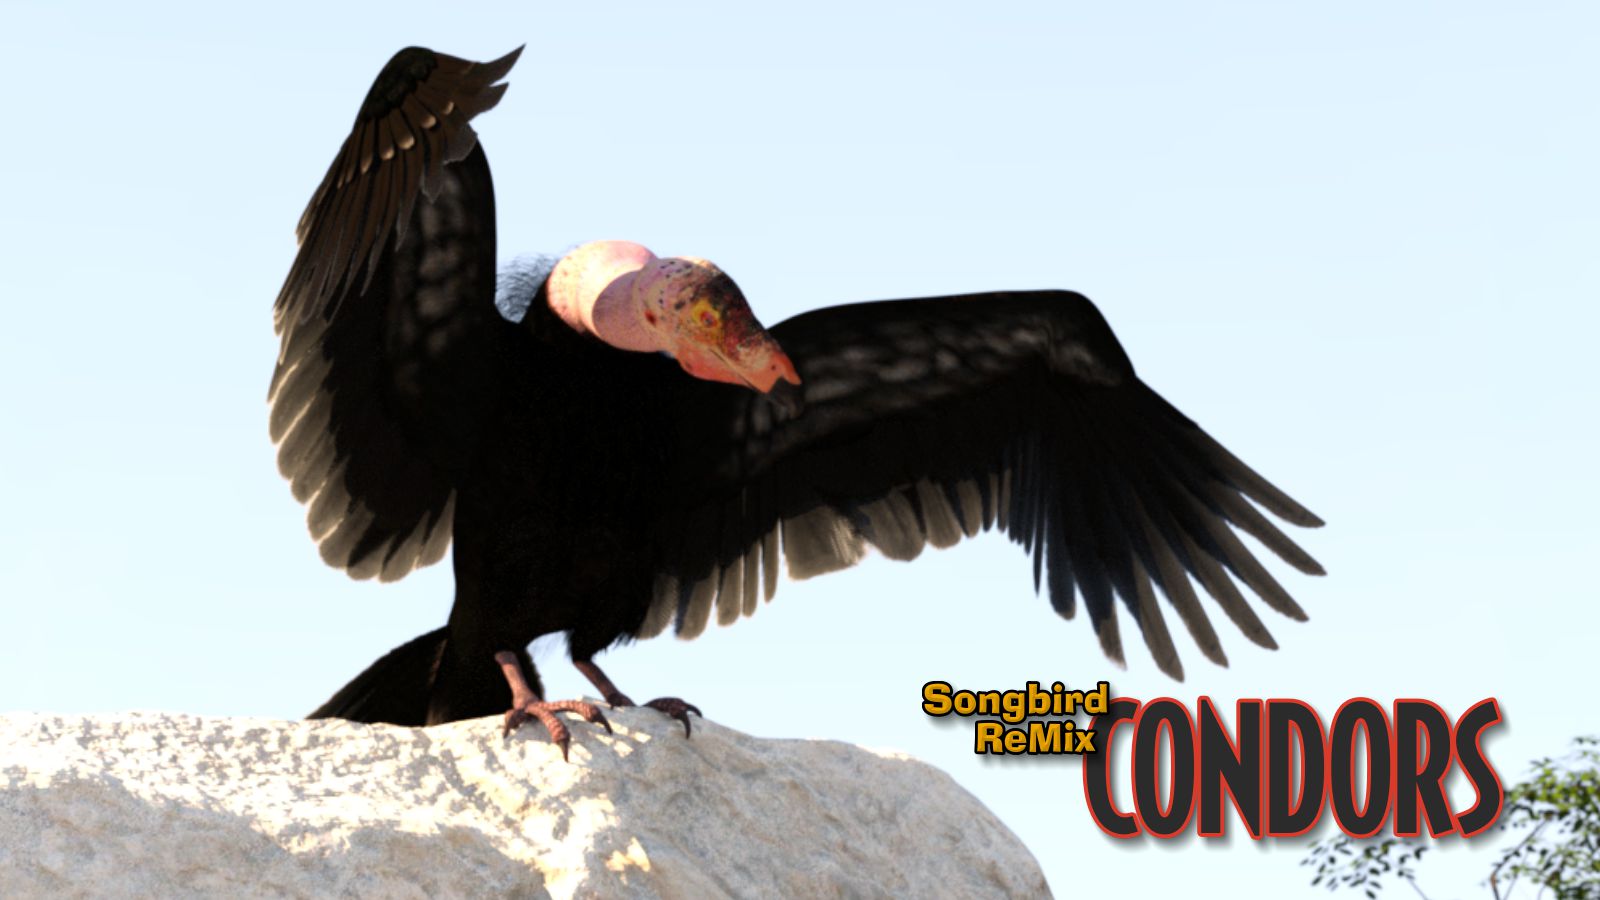 Condors_1600x900.jpg